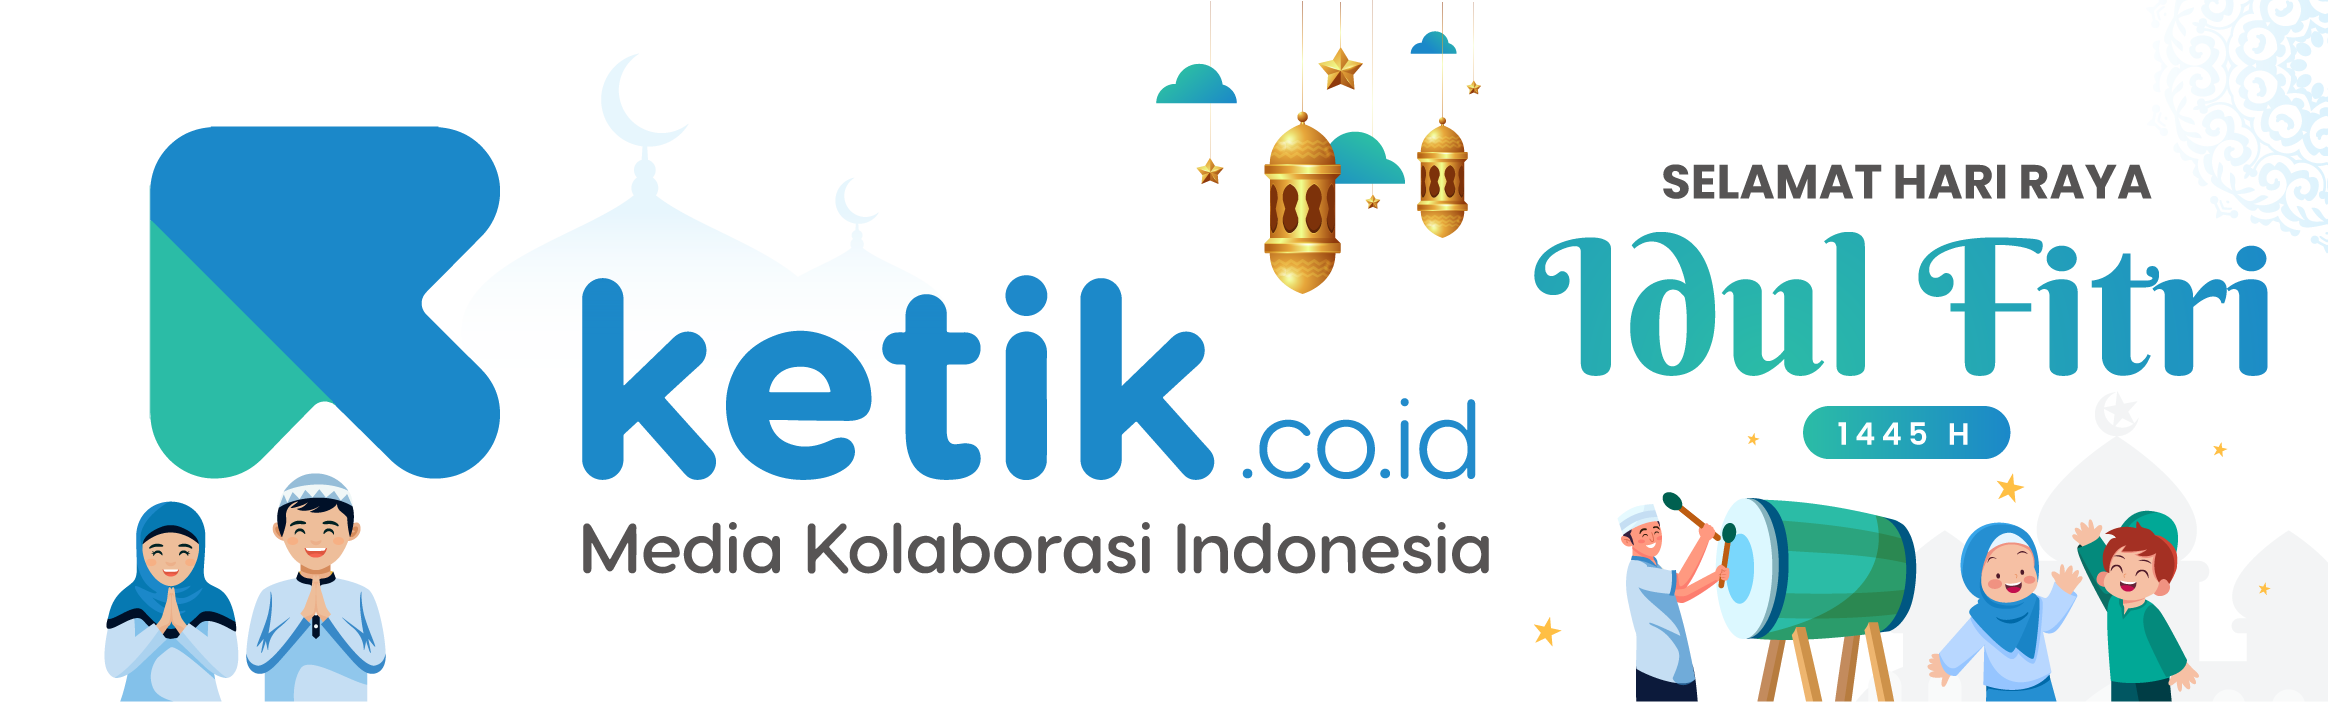 Logo Ketik